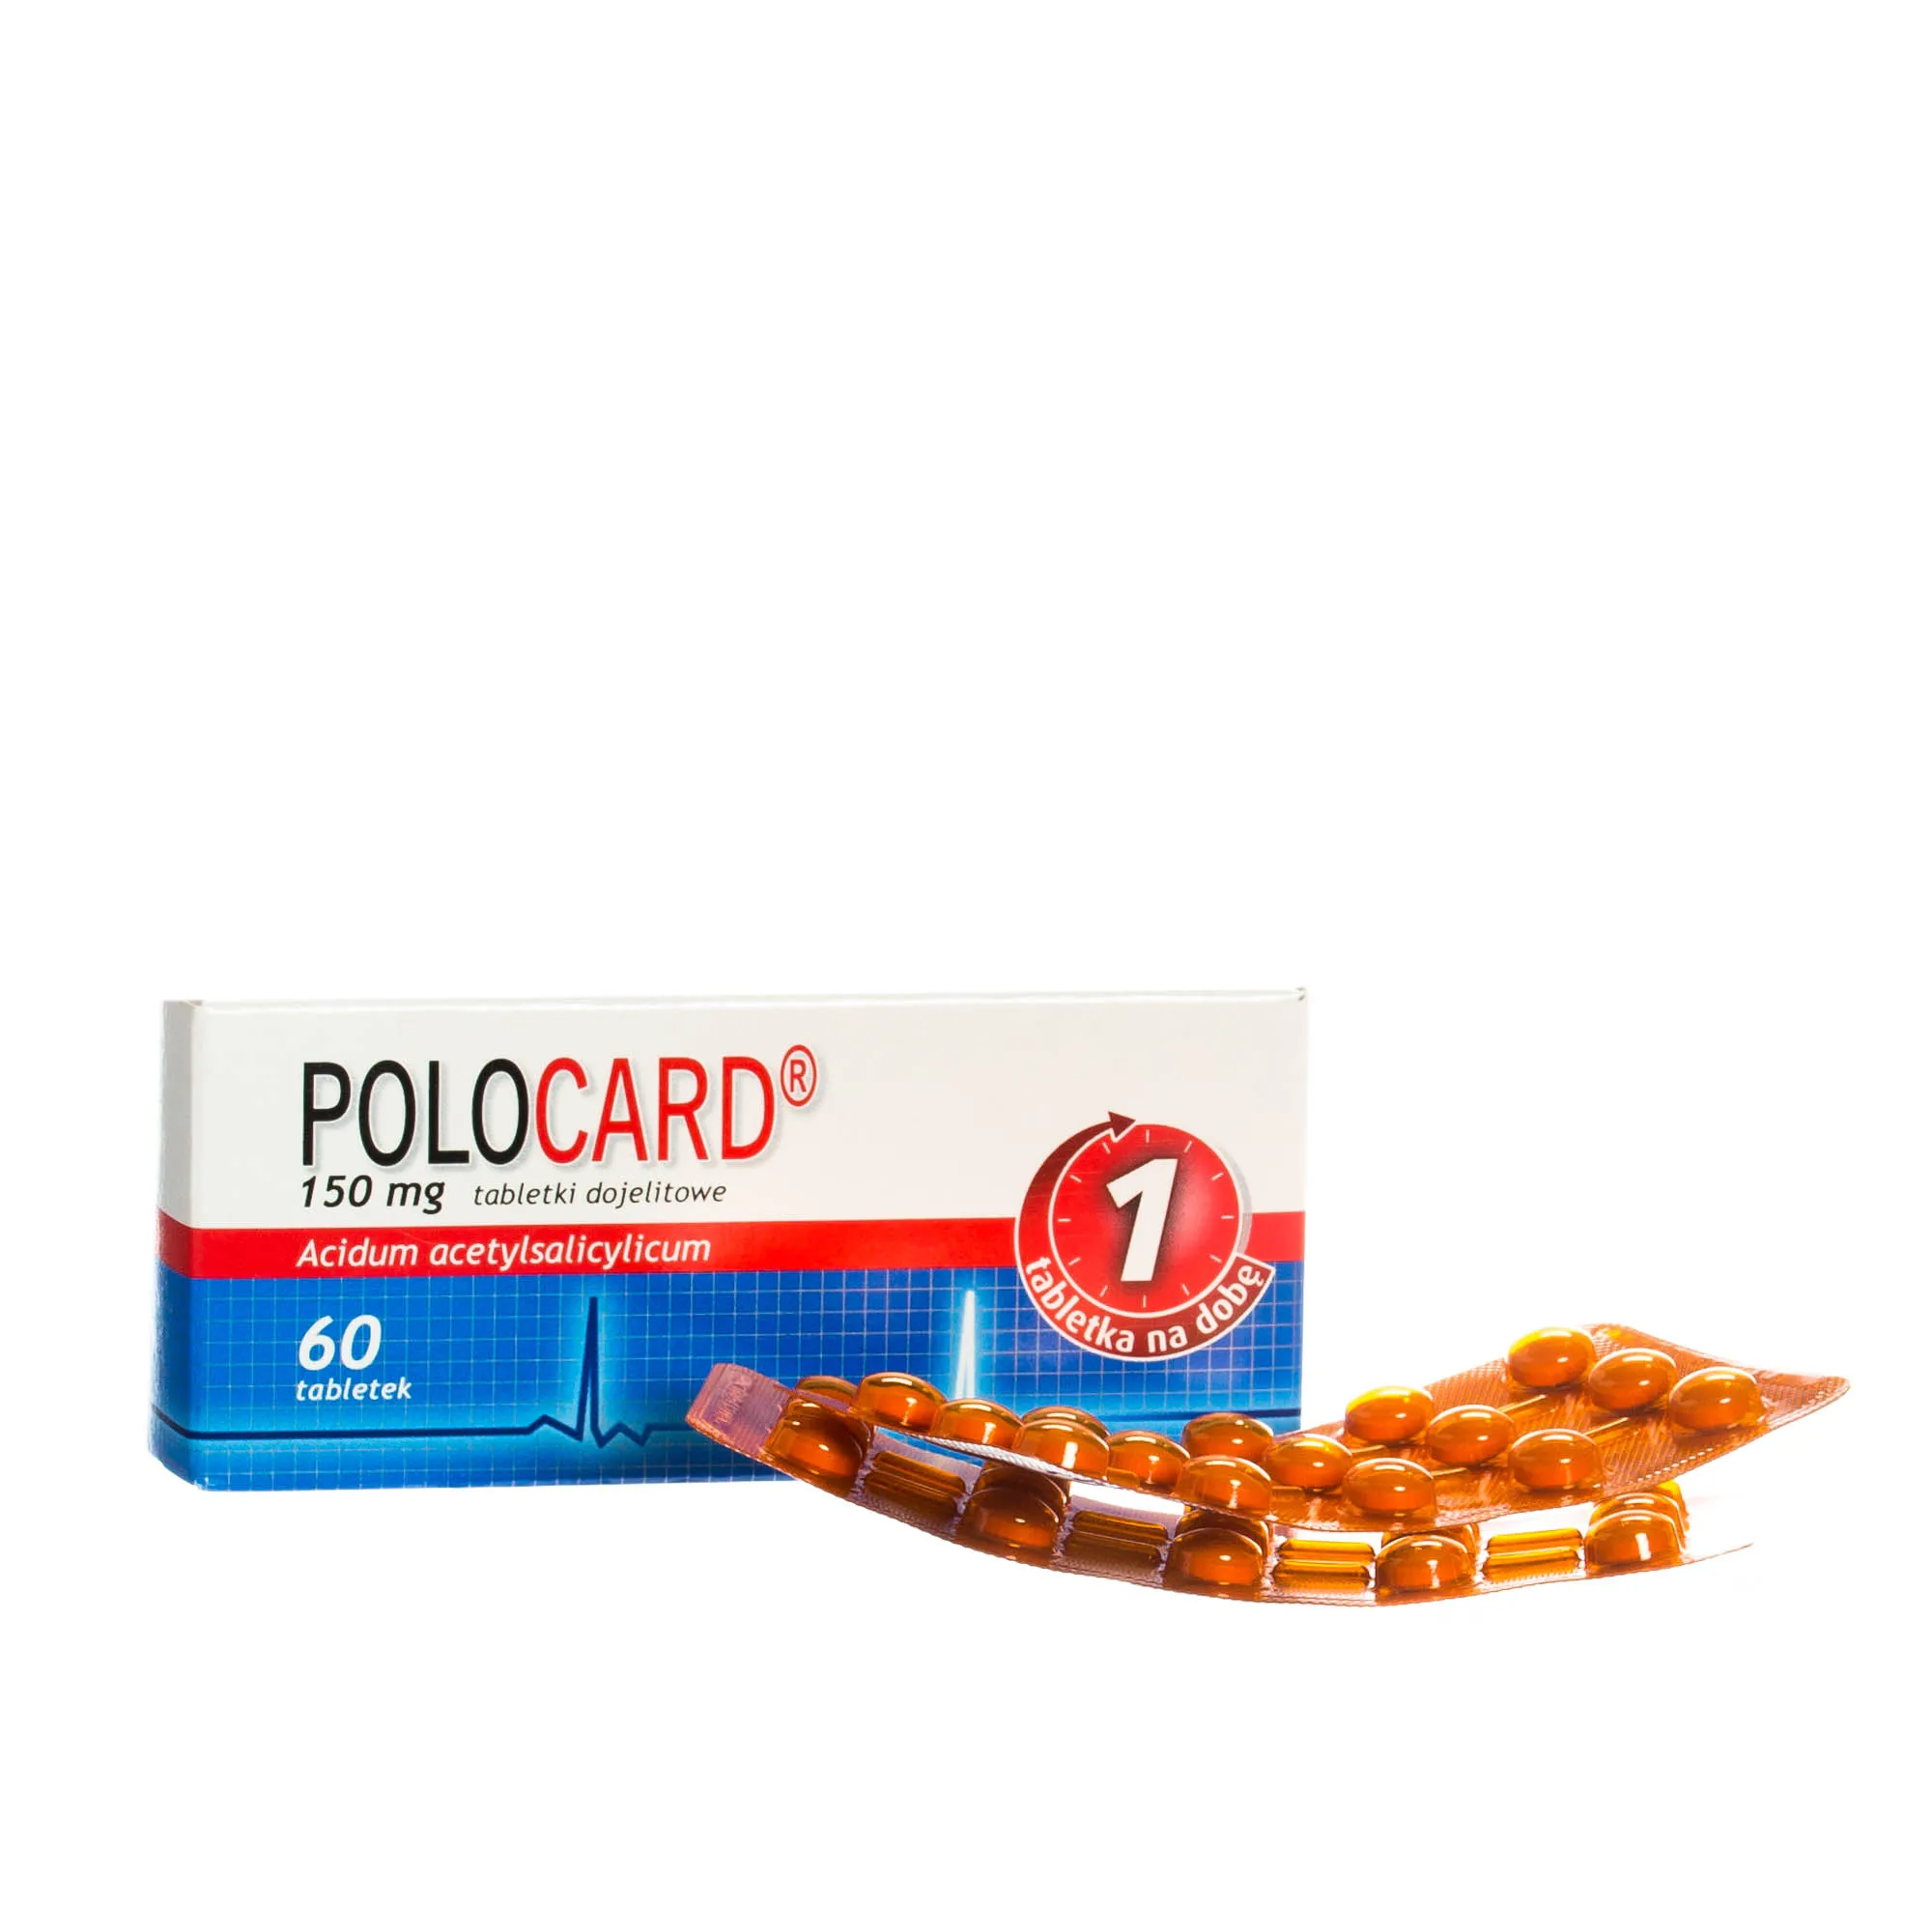 Polocard. 150 mg, tabletki dojelitowe, Acidum acetylsalicylicum, 60 tabletek